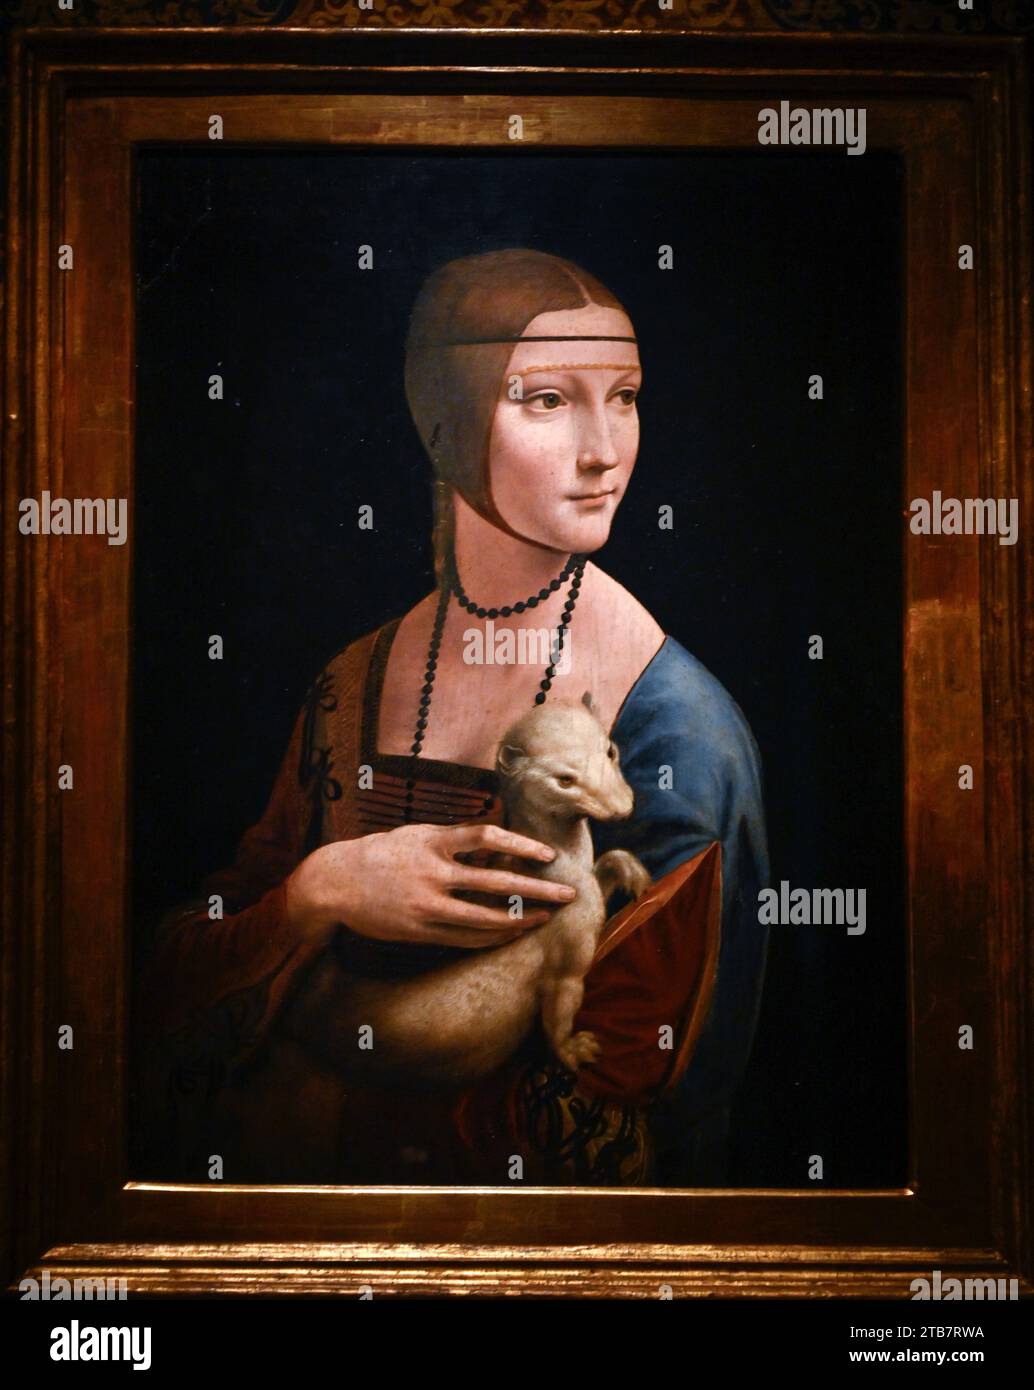 Polonia, Cracovia (Cracovia): Il Museo dei principi Czartoryski contiene un vero tesoro, uno dei rari dipinti di Leonardo da Vinci, la Signora con un ermellino. Foto Stock